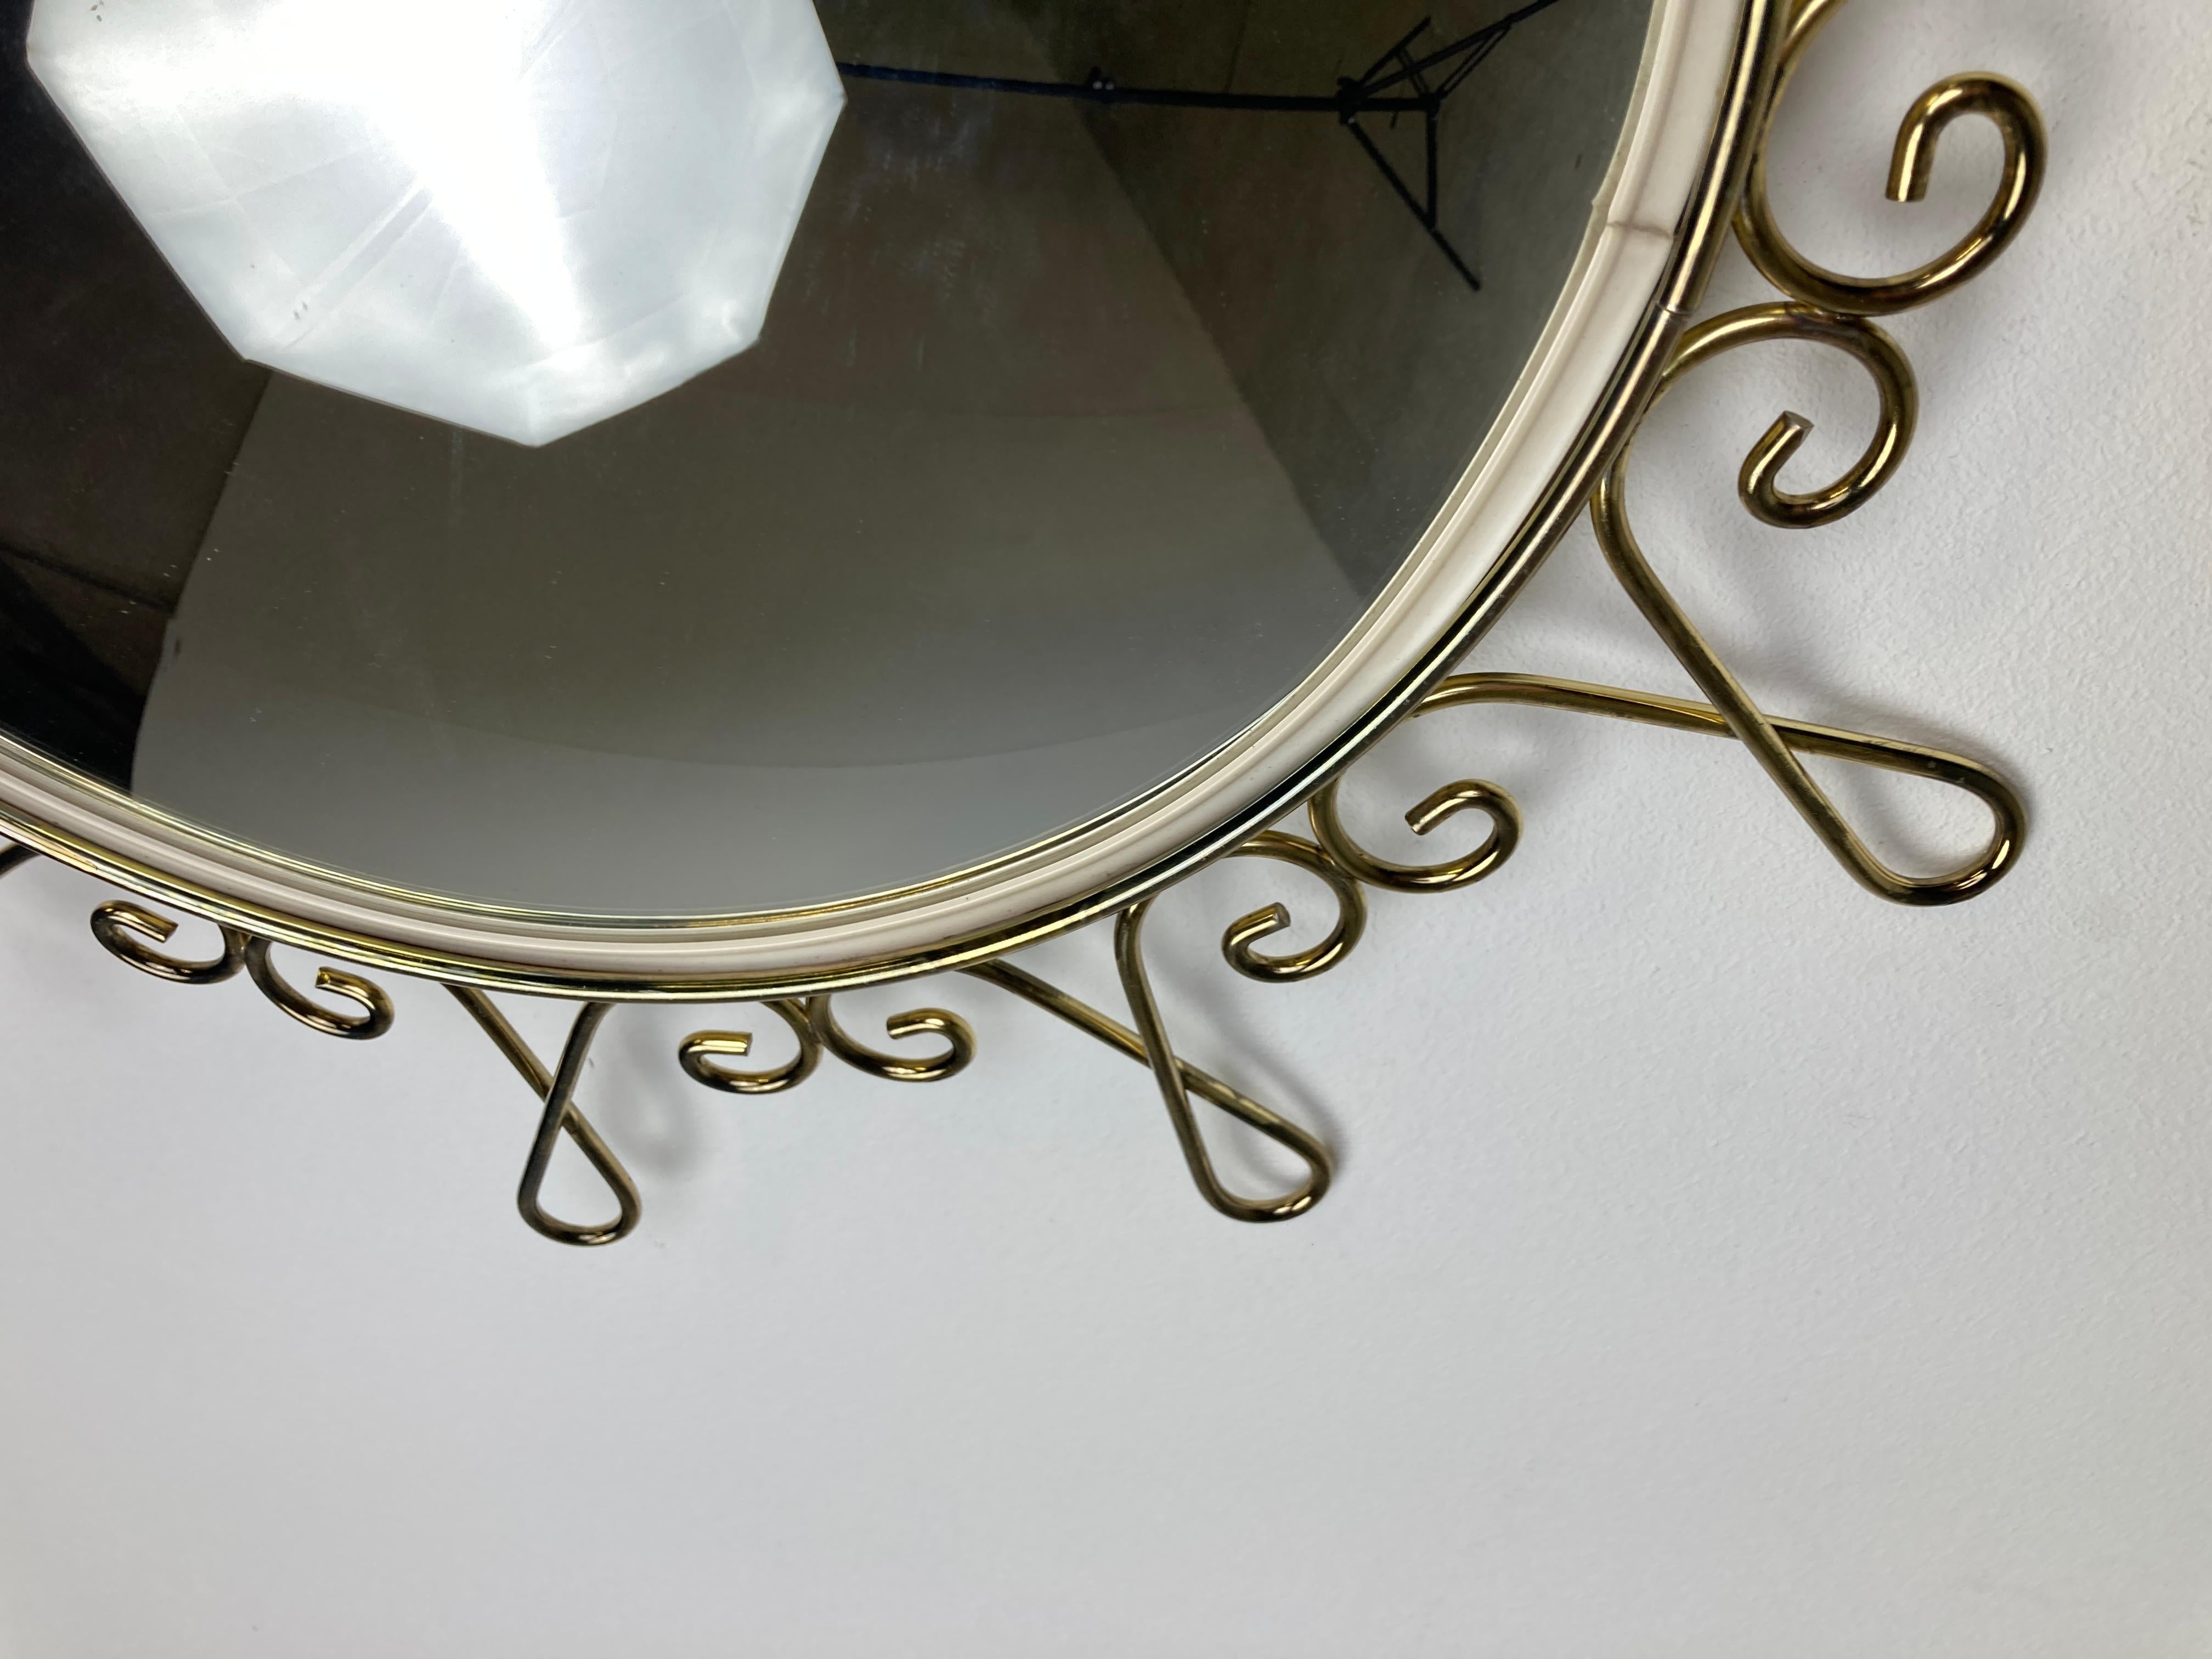 Sonnenschliff- oder Blumenspiegel aus der Mitte des Jahrhunderts aus Messing mit konvexem Glas.

Dieser Spiegel passt in die meisten Innenräume und ist eine perfekte Ergänzung für eine Einrichtung im Regency-Stil.

Der Spiegel ist aus Messing